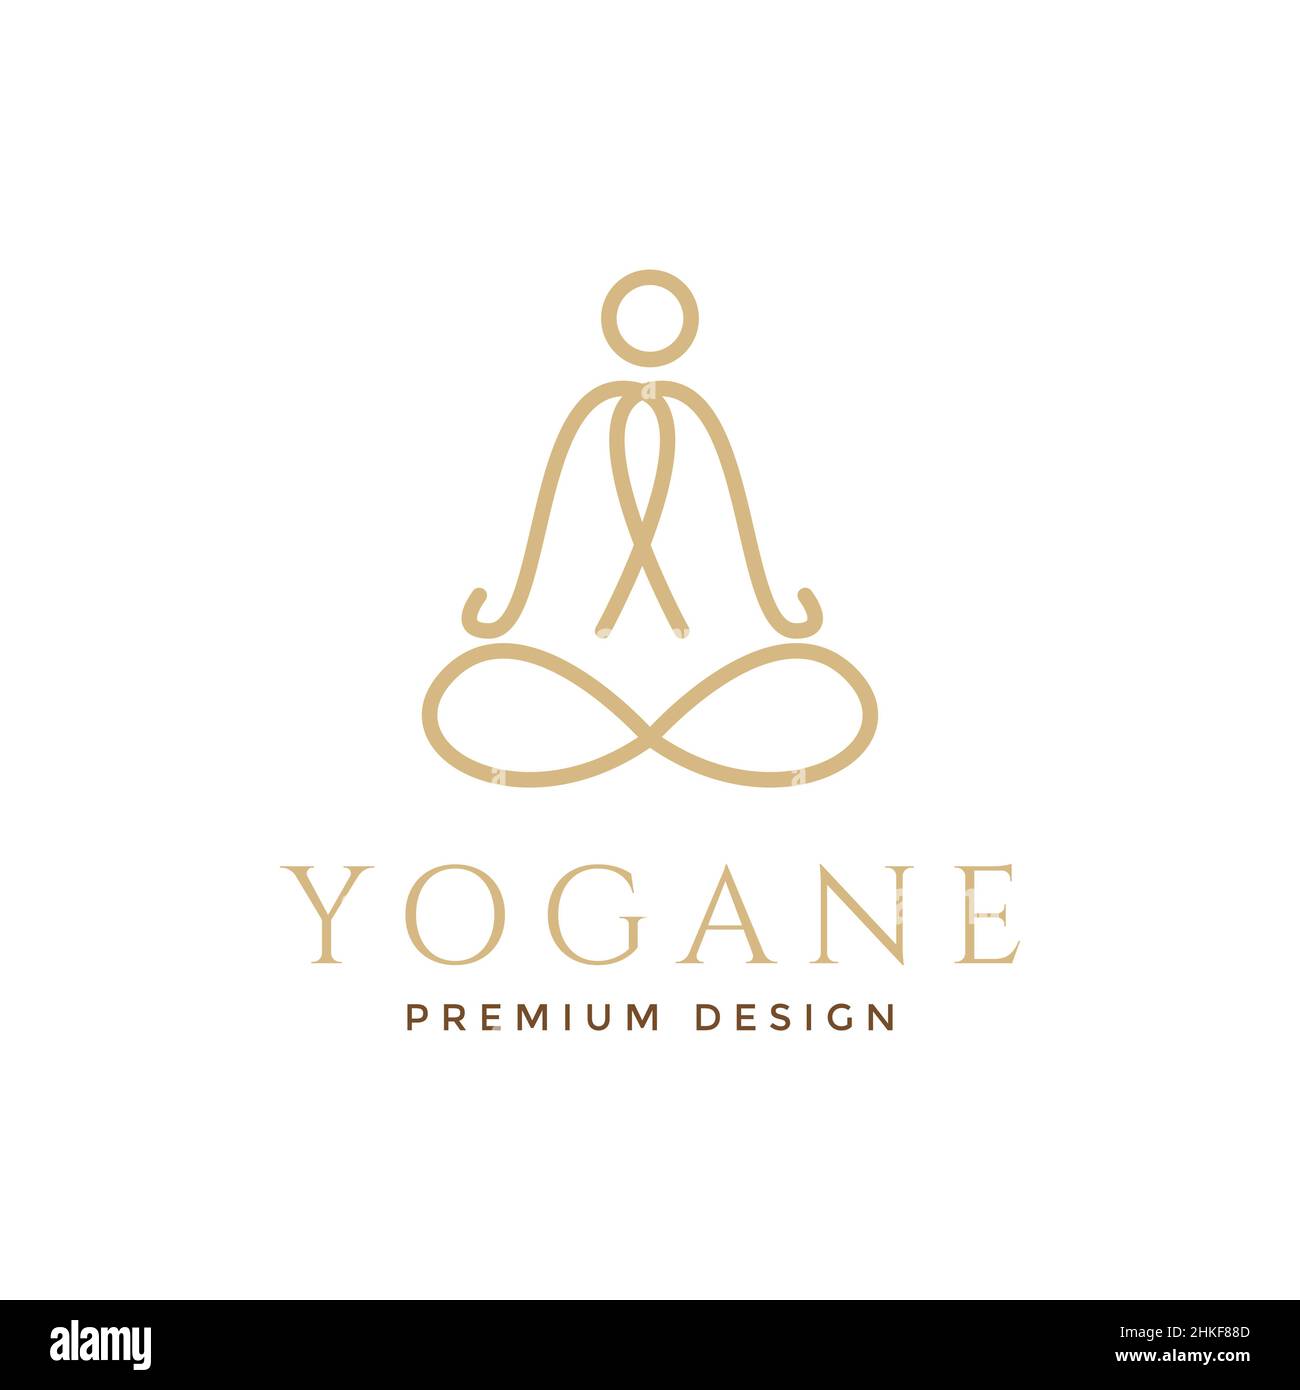 line person yoga luxury logo design, vector graphic symbol icon illustration creative idea Stock Vector